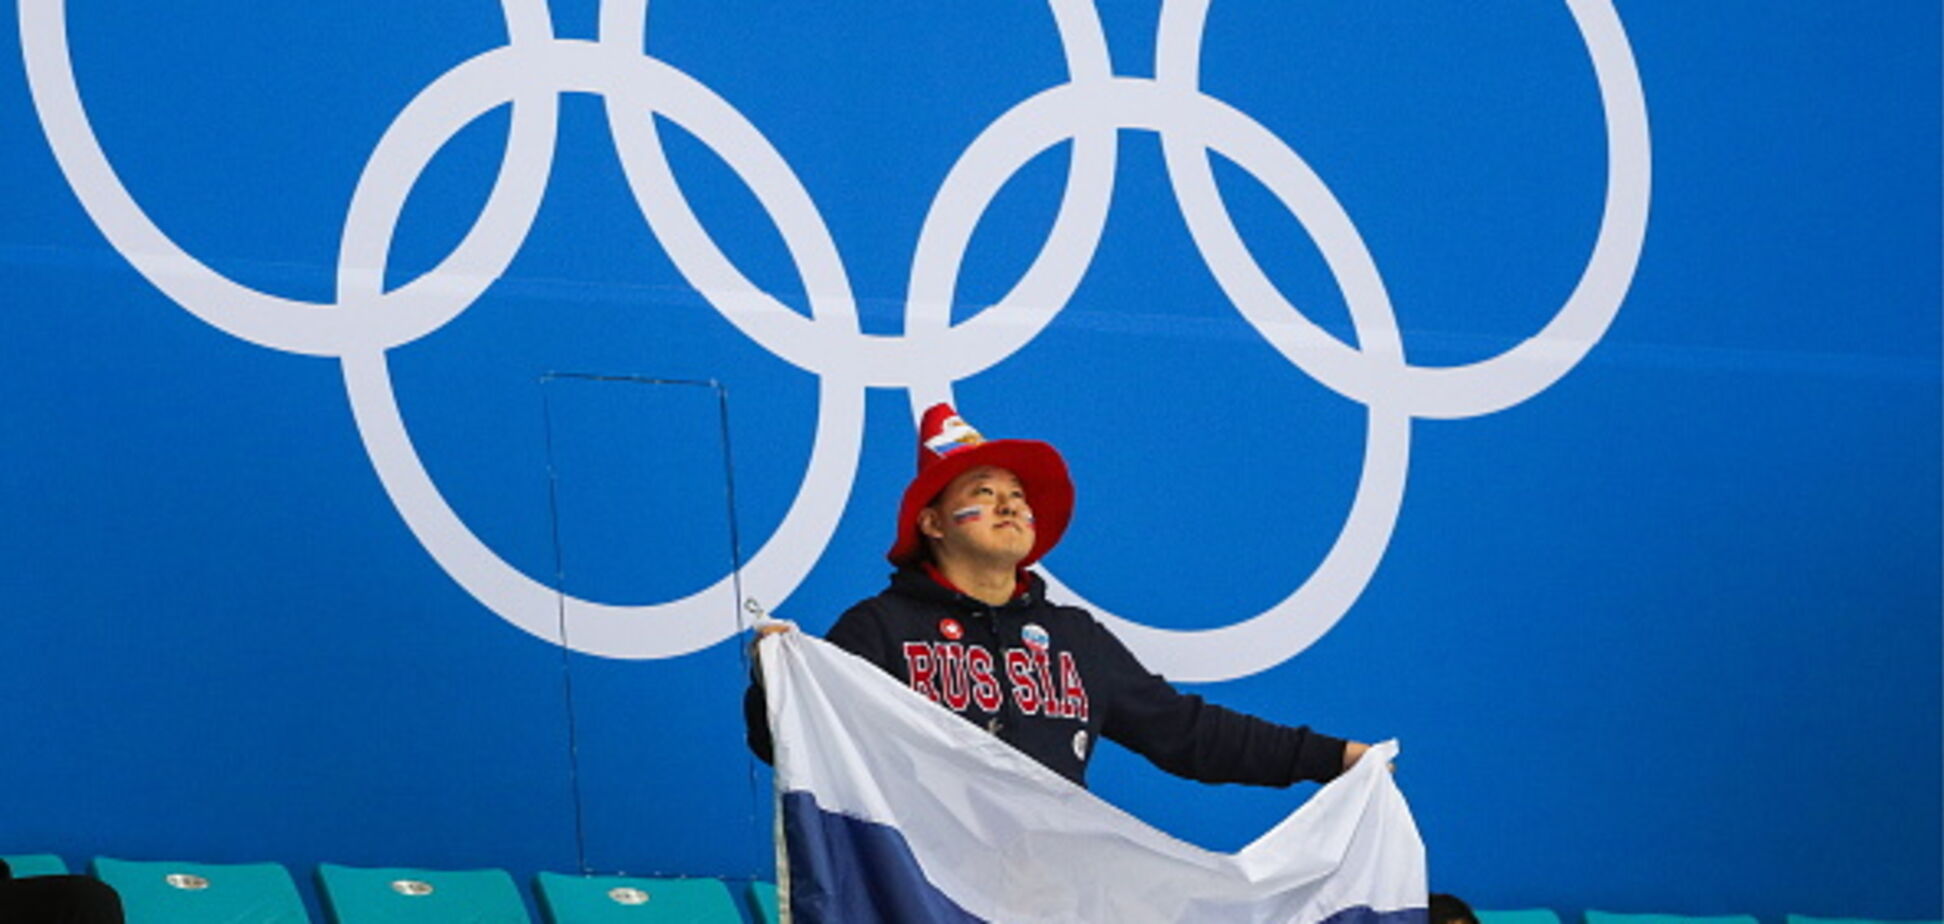 МОК изменил свою позицию по бану России на церемонии закрытия Олимпиады - СМИ